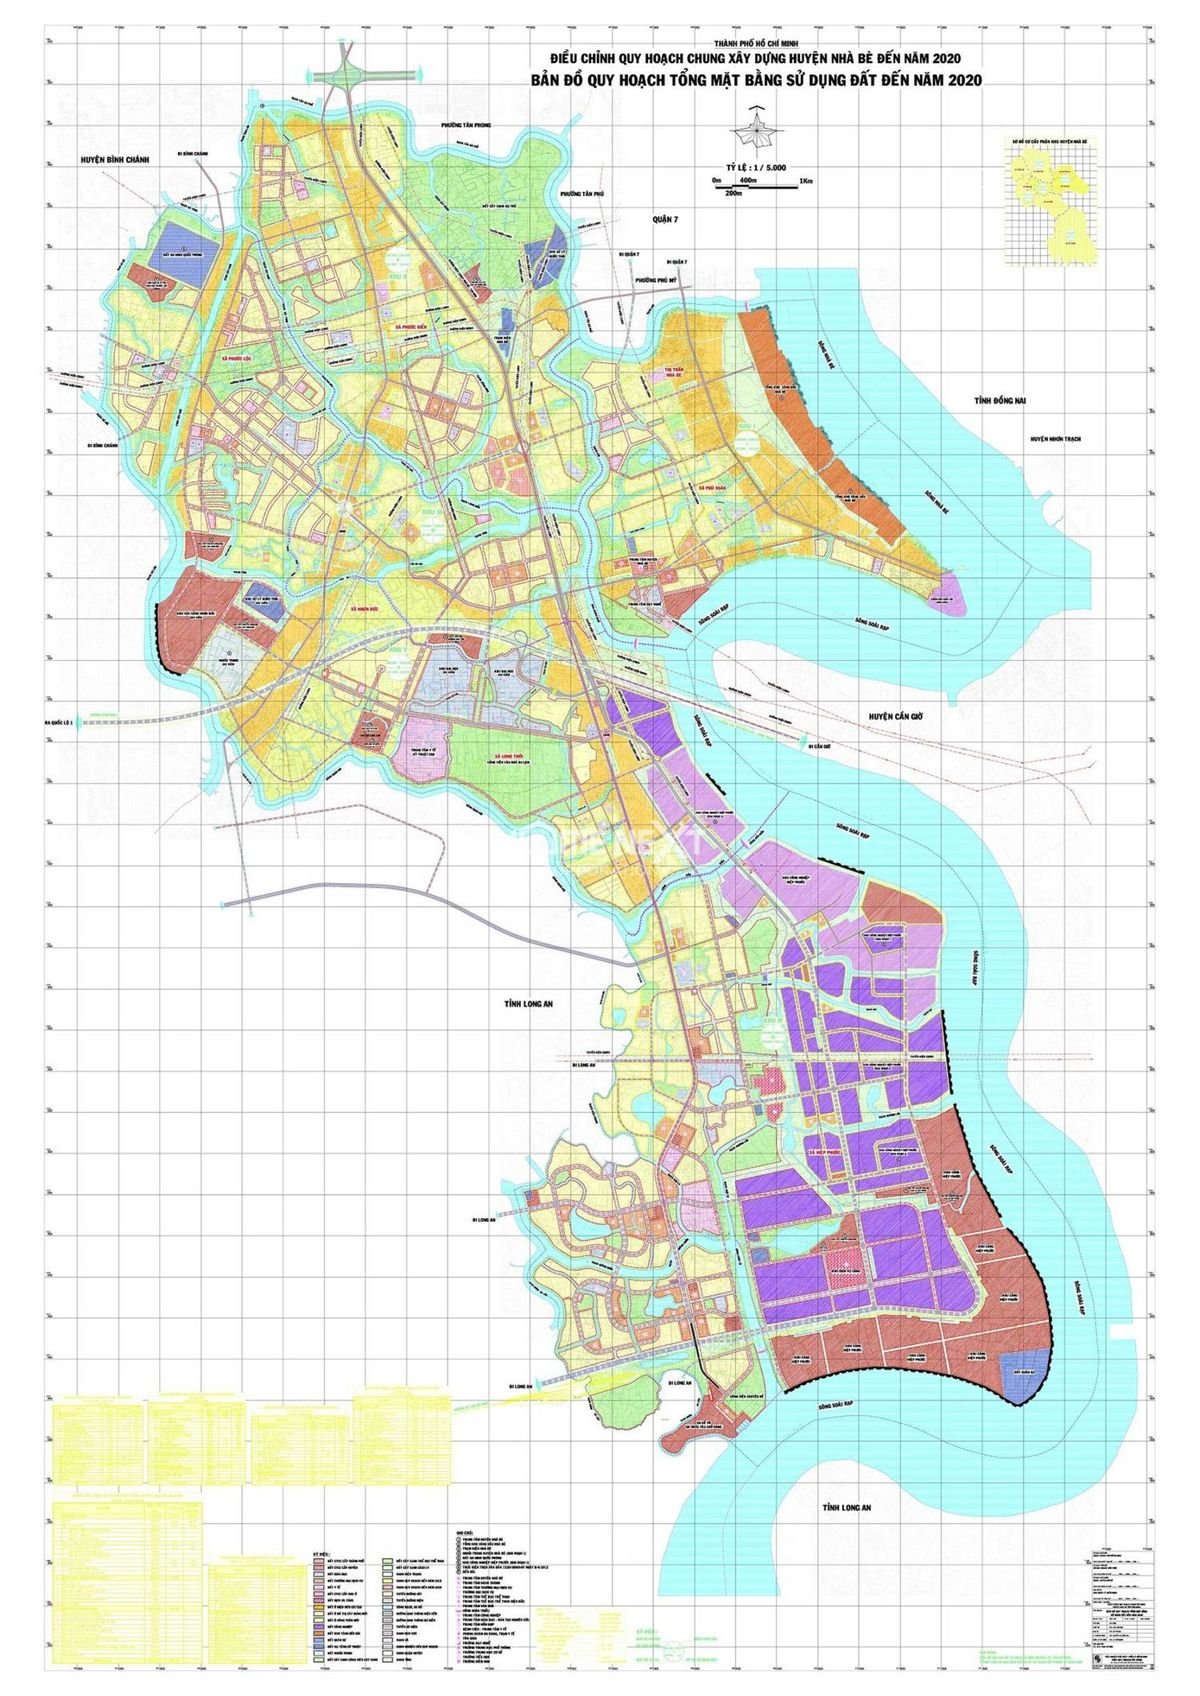 Khám phá cập nhật mới nhất bản đồ huyện Nhà Bè đến năm 2024 với những thông tin chi tiết bao gồm: nhà đất, bất động sản, cơ sở hạ tầng, văn hóa, lịch sử...để giúp bạn lựa chọn địa điểm đầu tư và sinh sống lý tưởng.